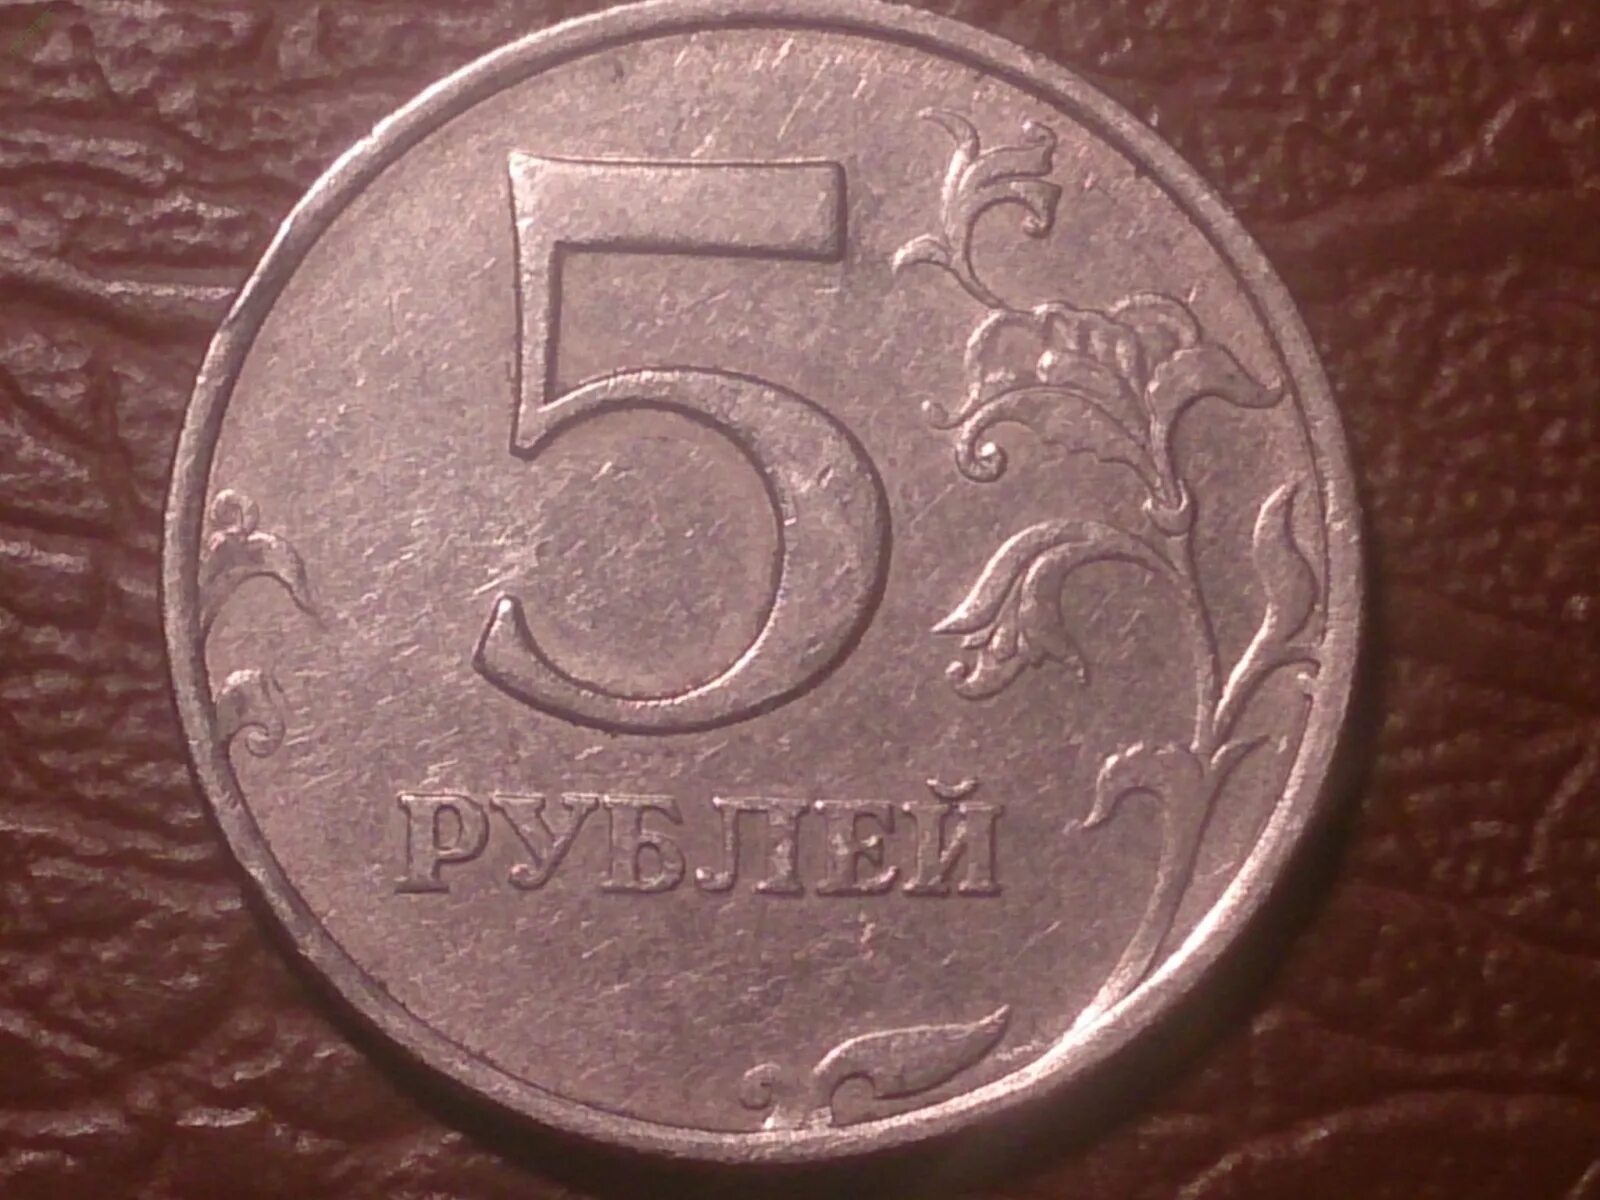 5 рублей стороны. 5 Рублей 1997 ММД СПМД. 5 Рублей 1997 ММД. 5 Рублей 1997 год Санкт Петербургский монетный двор. 5 Рублей 1997 СПМД.